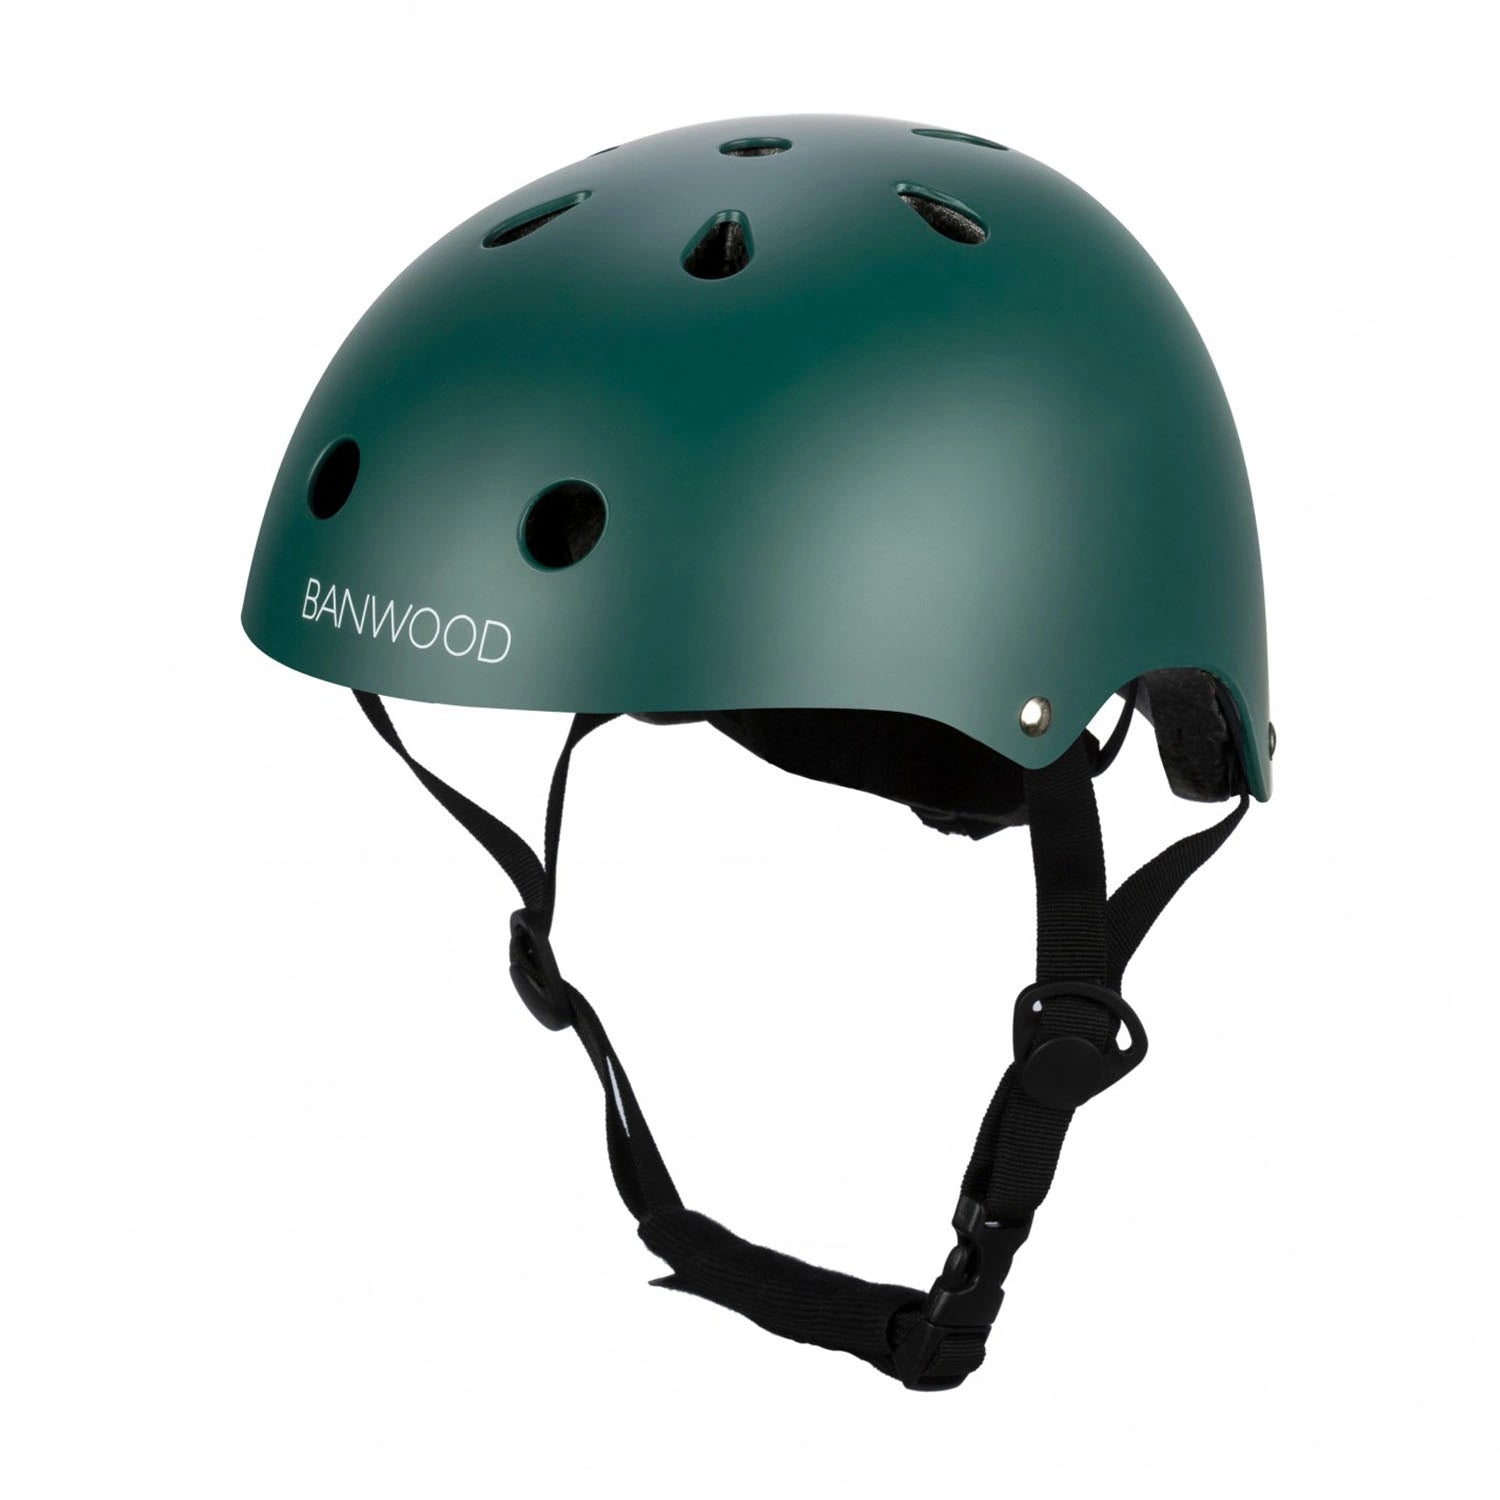 An image of Banwood Buy Banwood Classic Kids Bike Helmet – Safe & Stylish Green